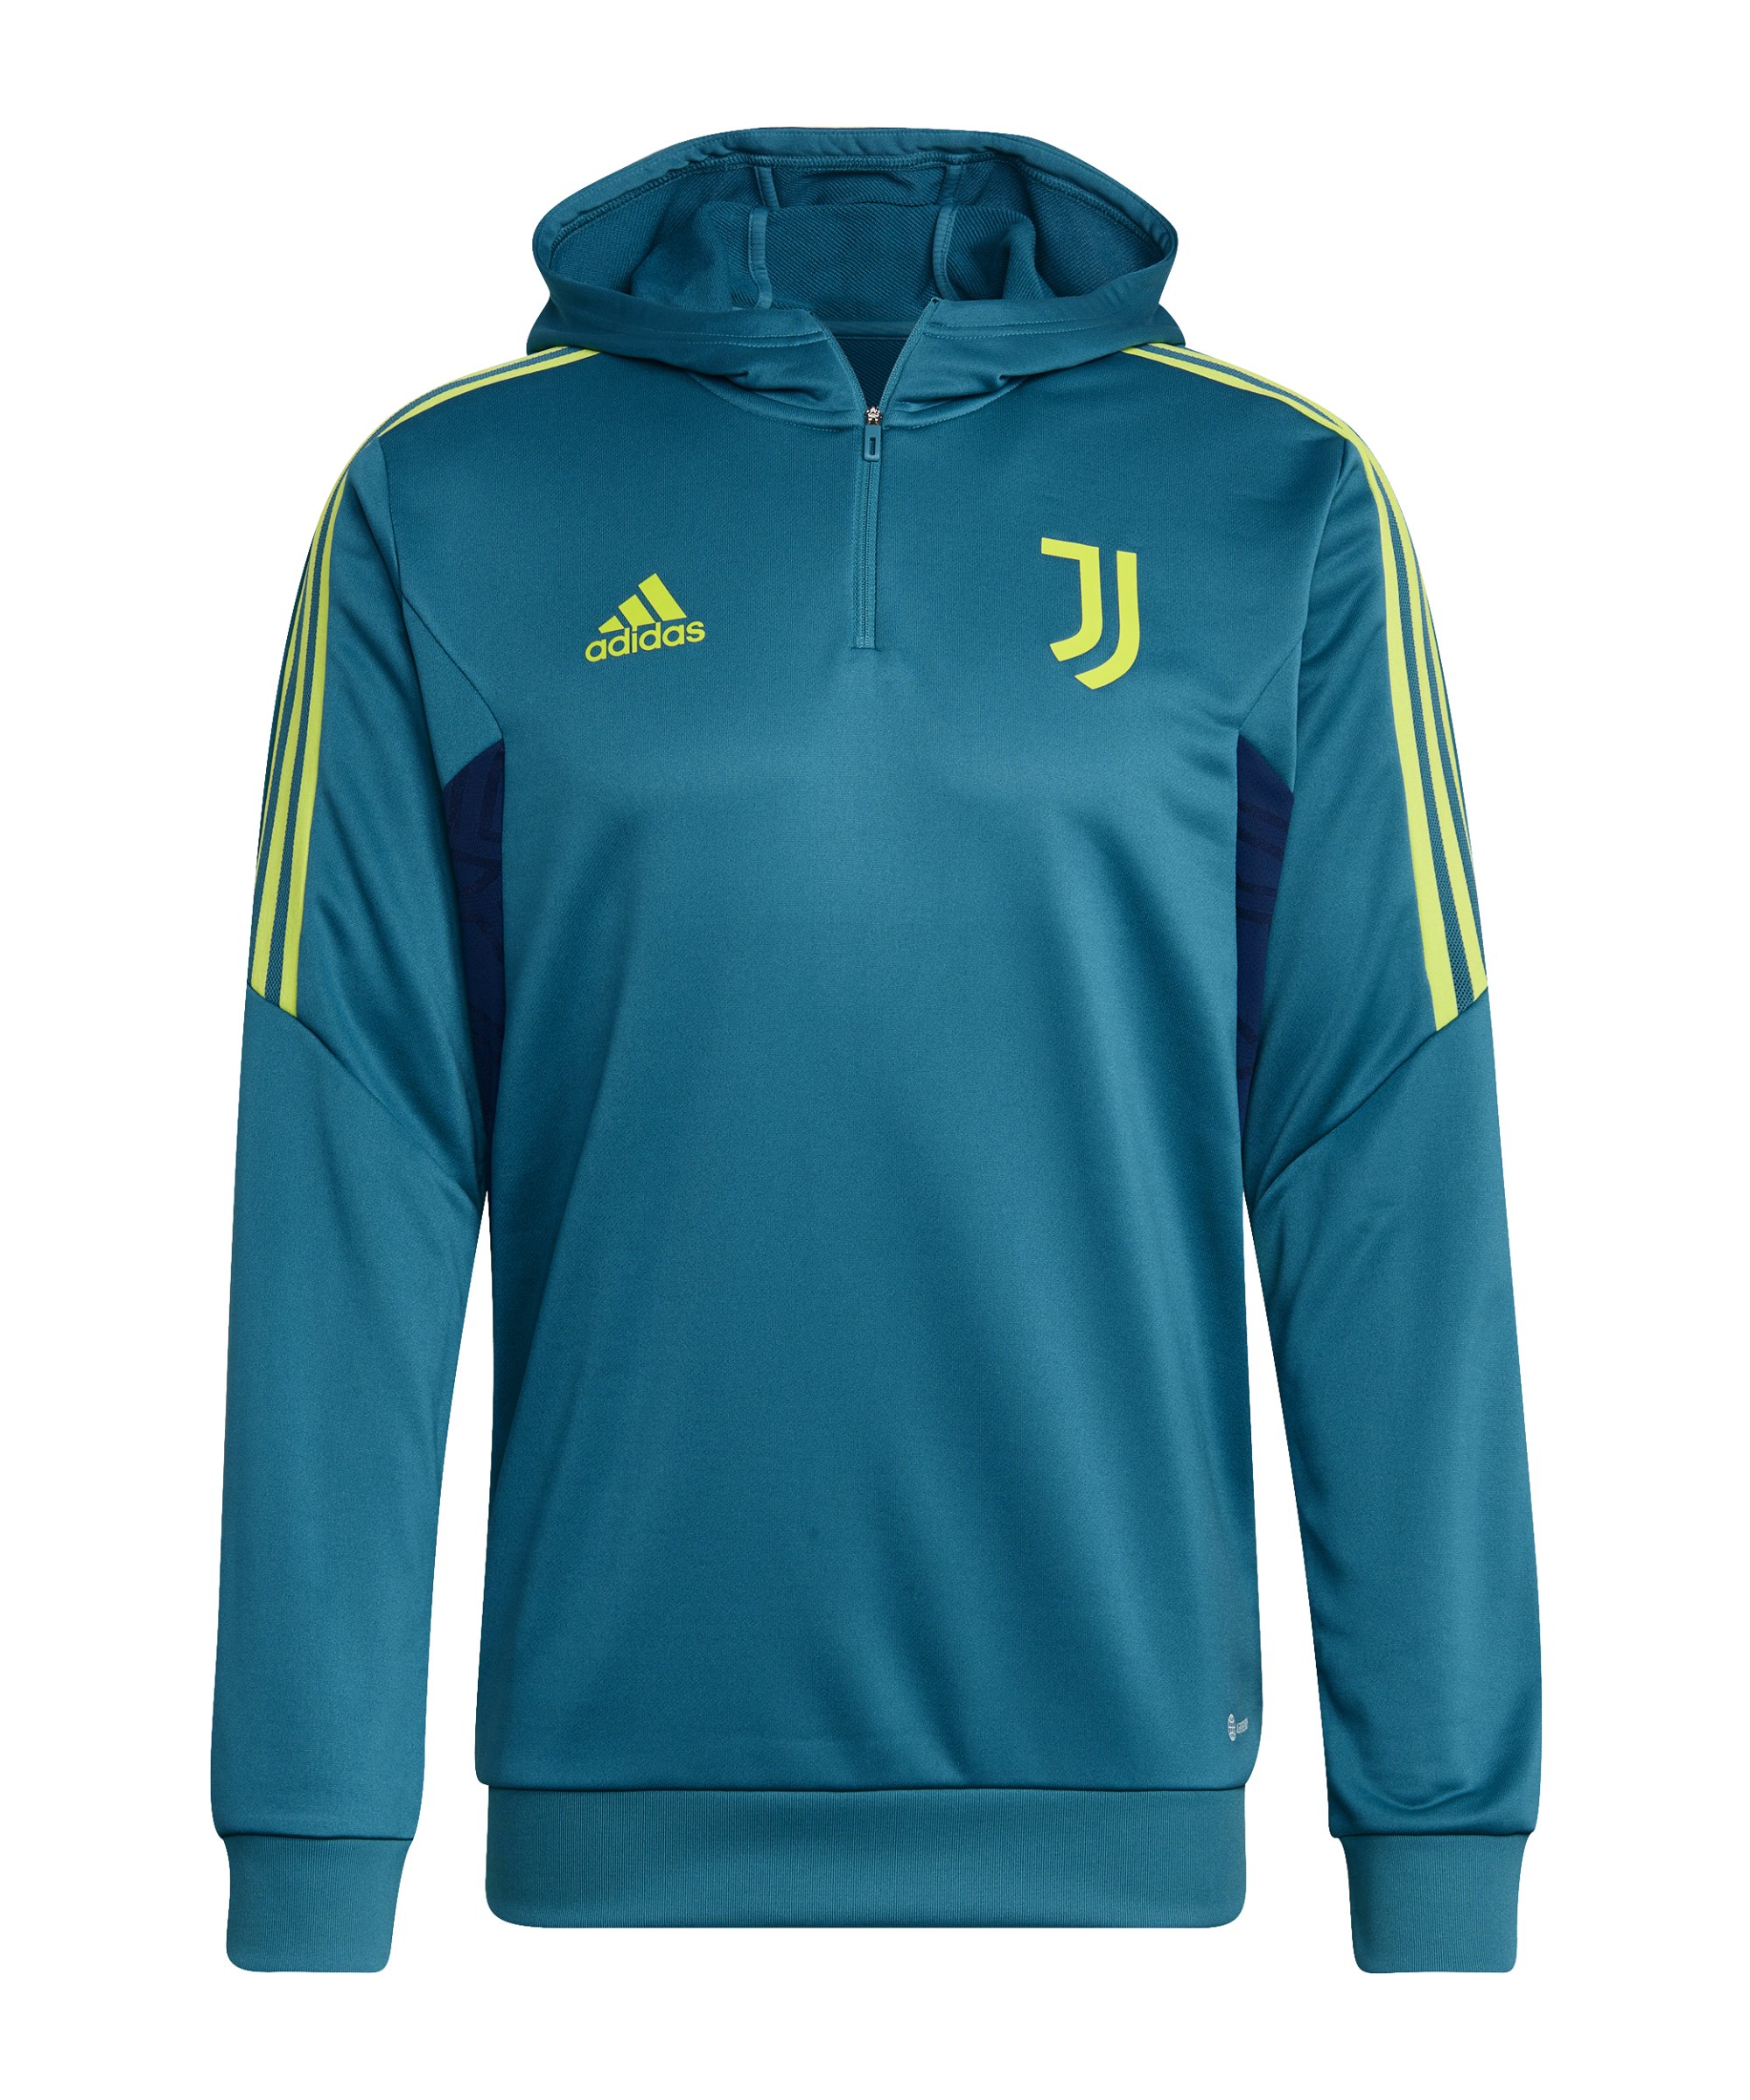 adidas Juventus Turin HalfZip Sweatshirt Blau - blau